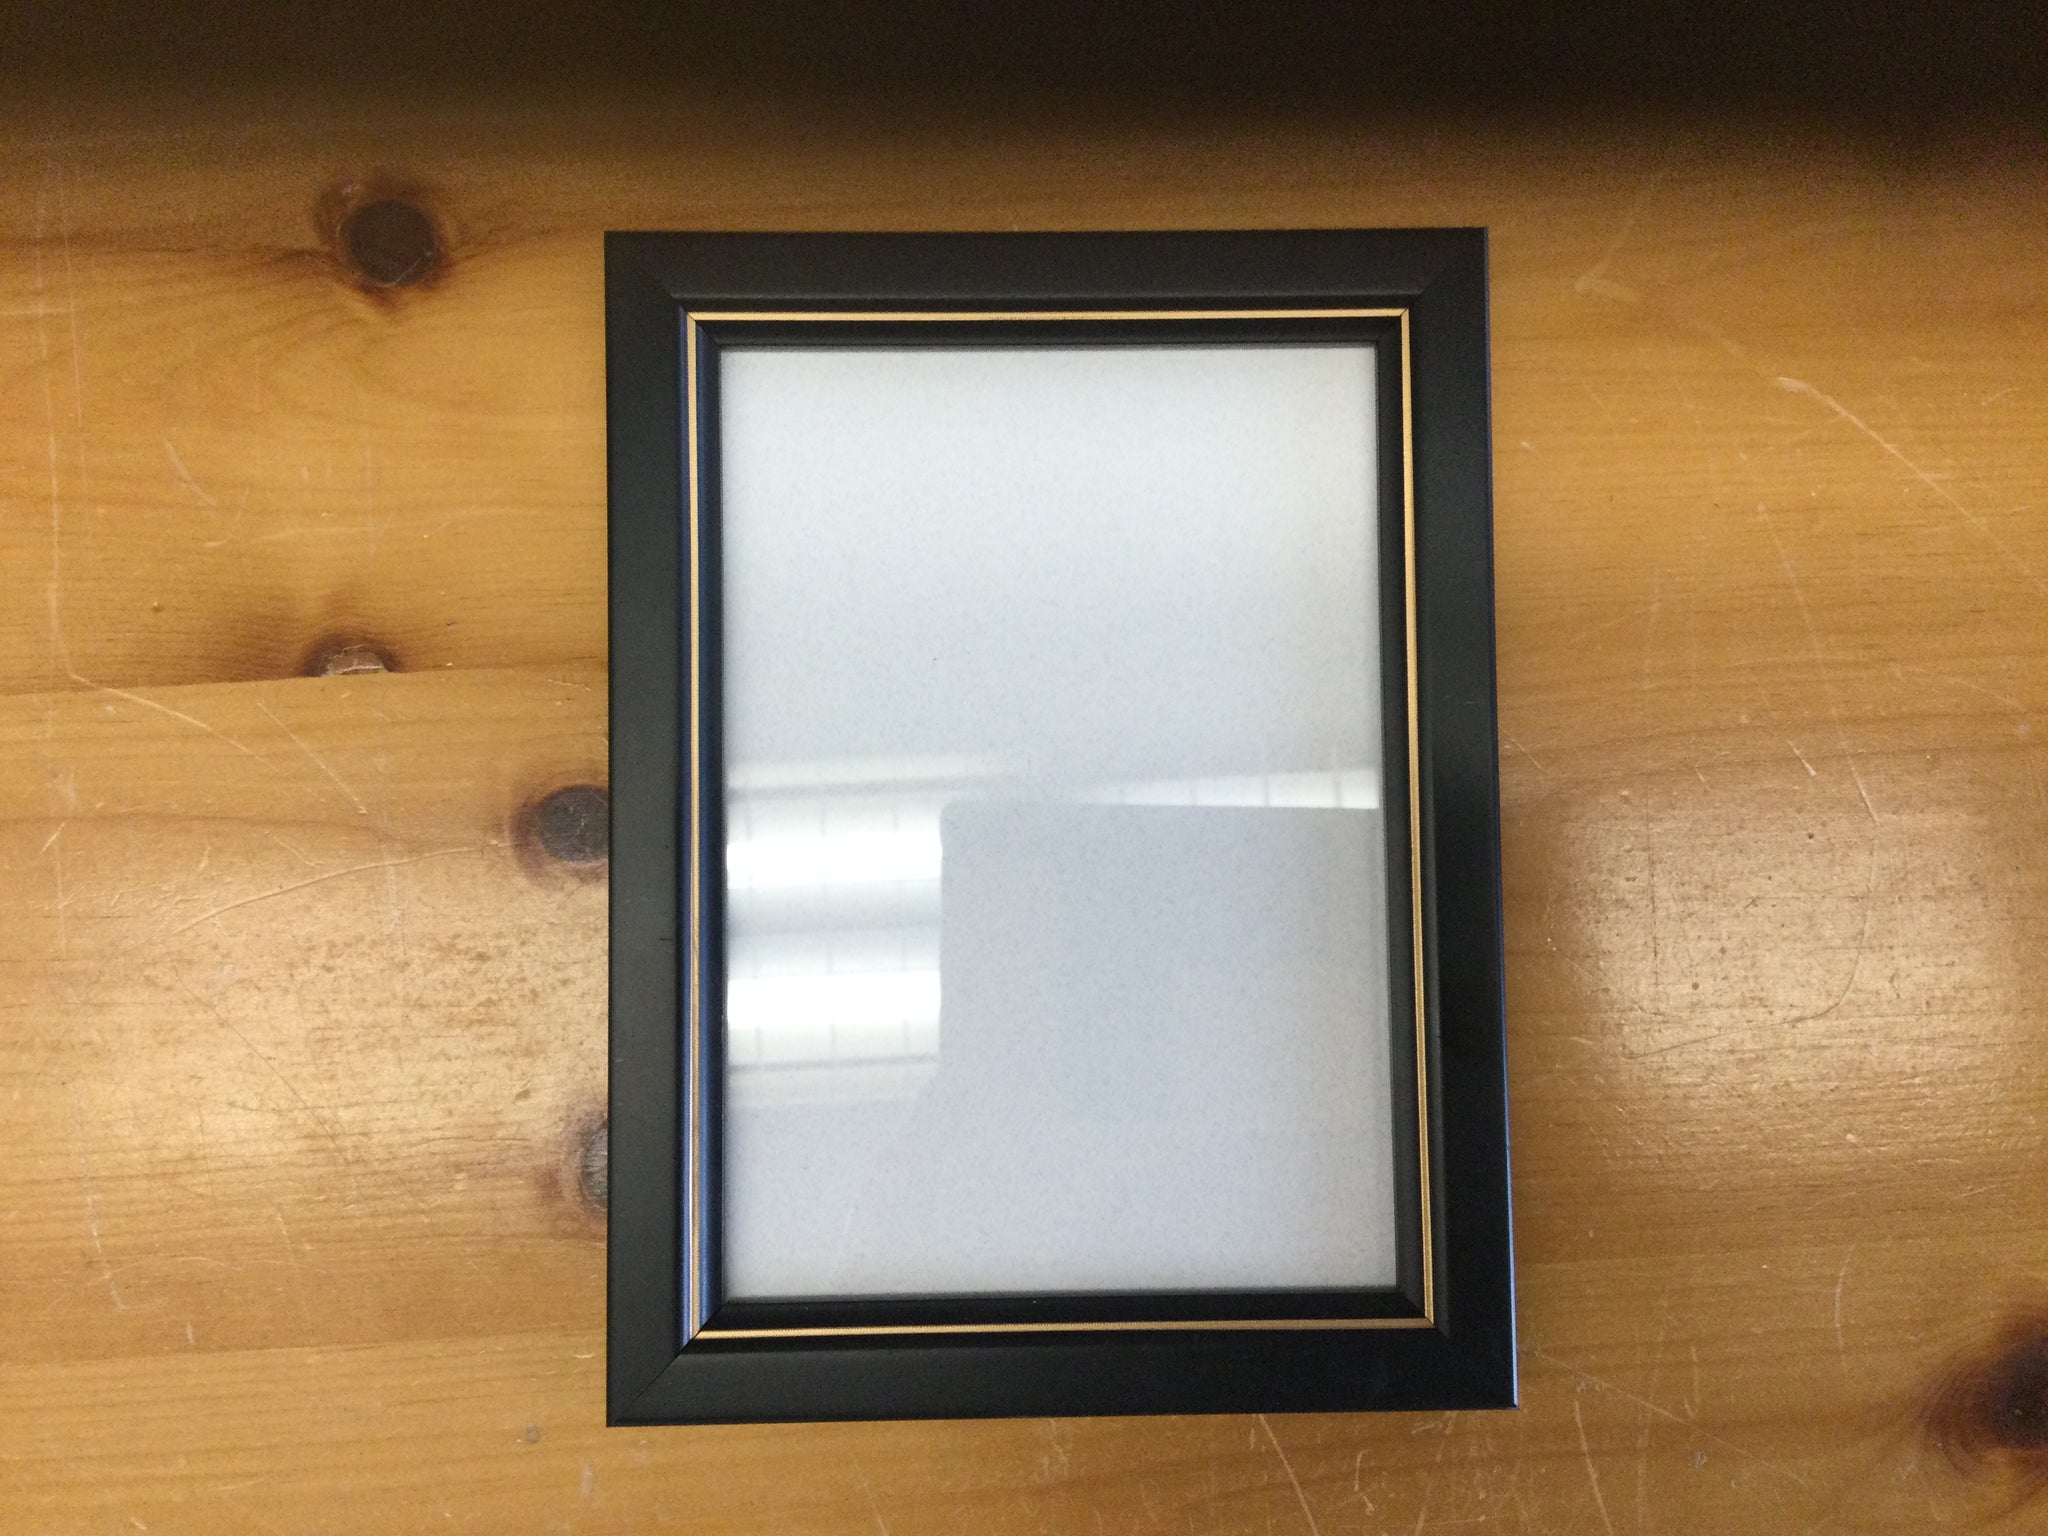 G.St Wooden Frame - 5x7 - Black Gold - 2357-7